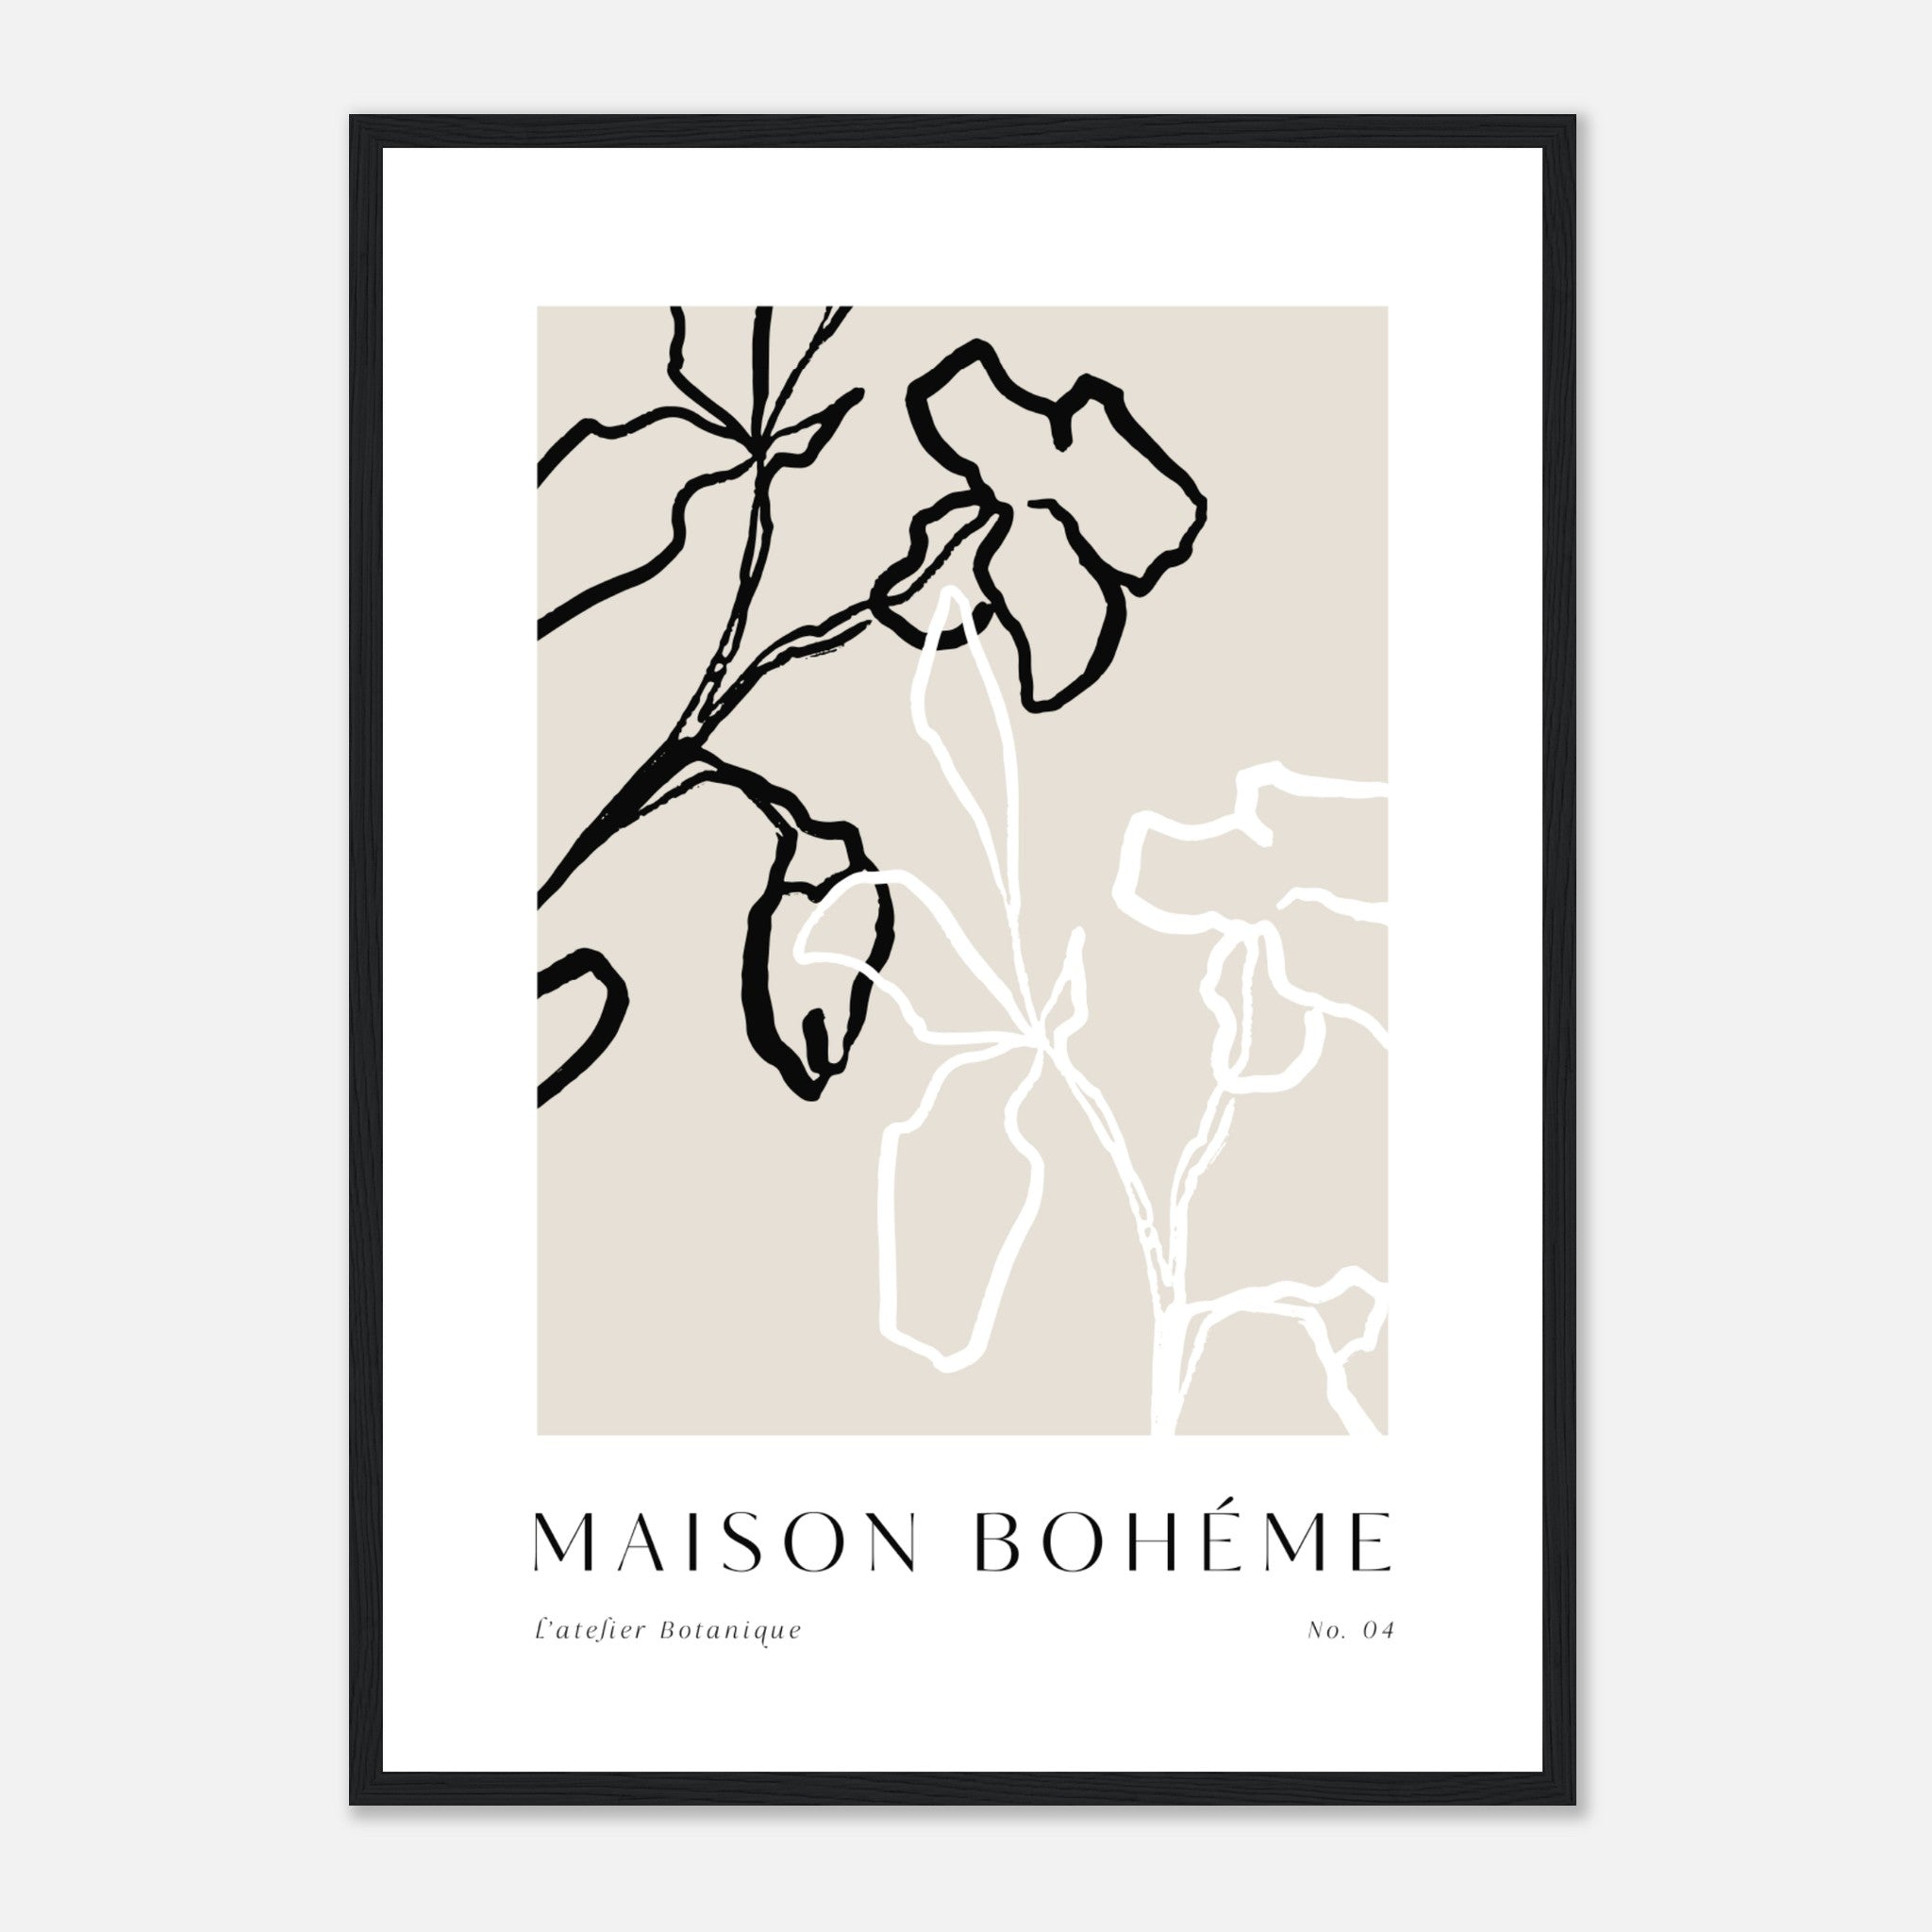 Maison Boheme No. 4 Poster